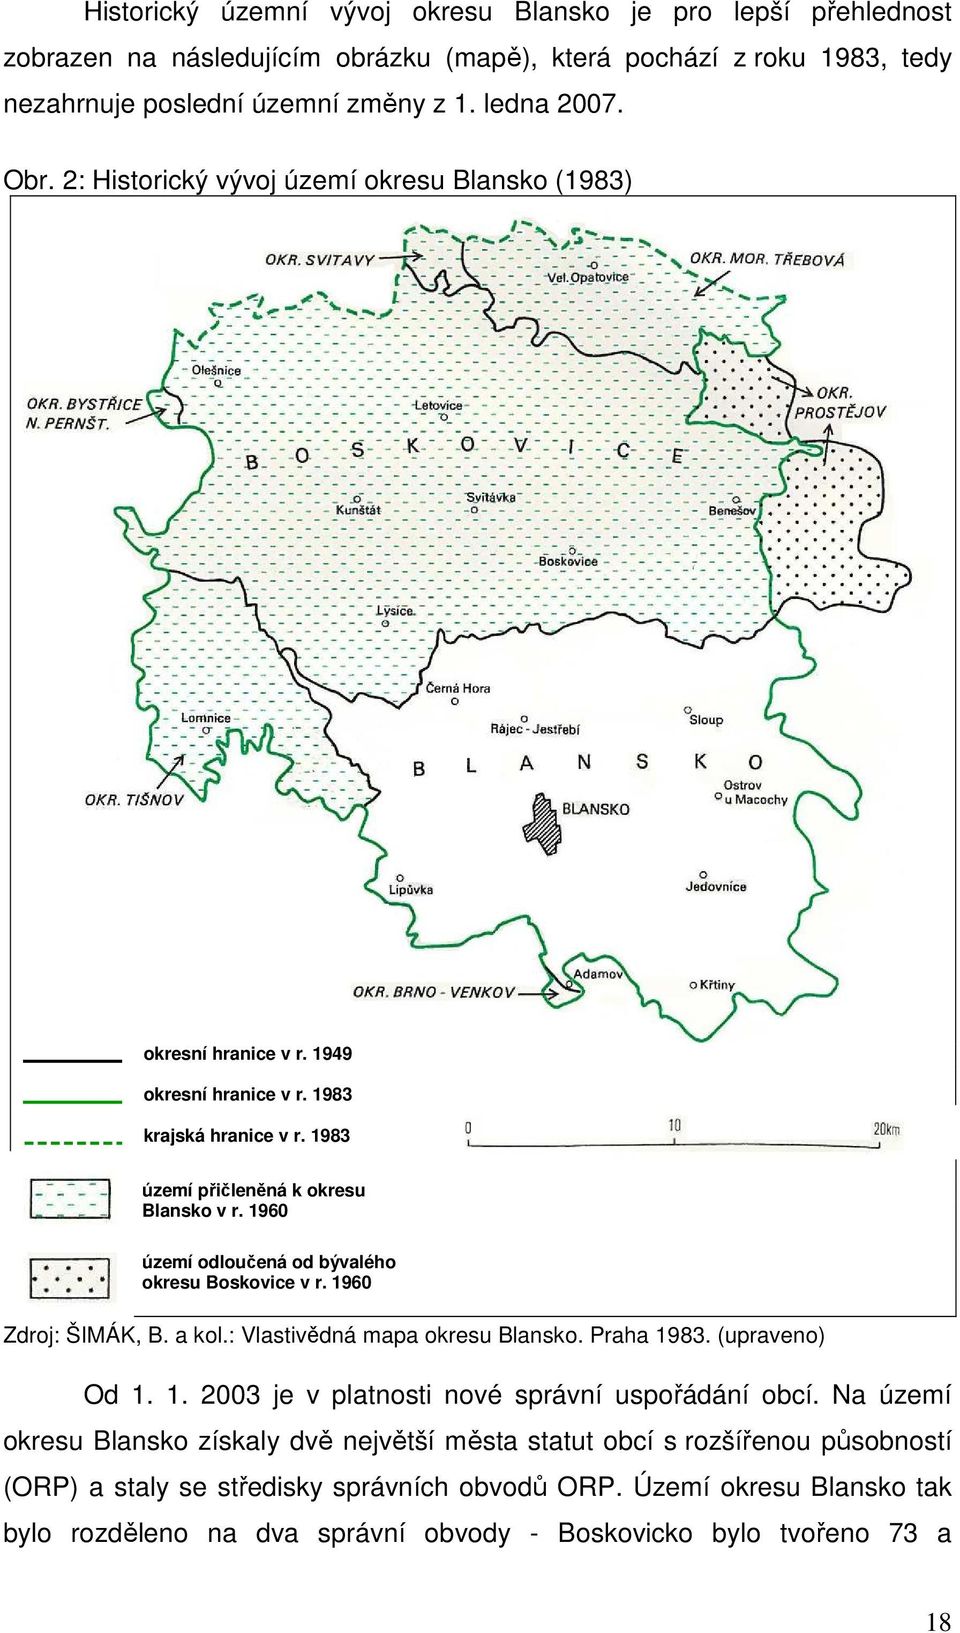 1960 území odloučená od bývalého okresu Boskovice v r. 1960 Zdroj: ŠIMÁK, B. a kol.: Vlastivědná mapa okresu Blansko. Praha 1983. (upraveno) Od 1. 1. 2003 je v platnosti nové správní uspořádání obcí.